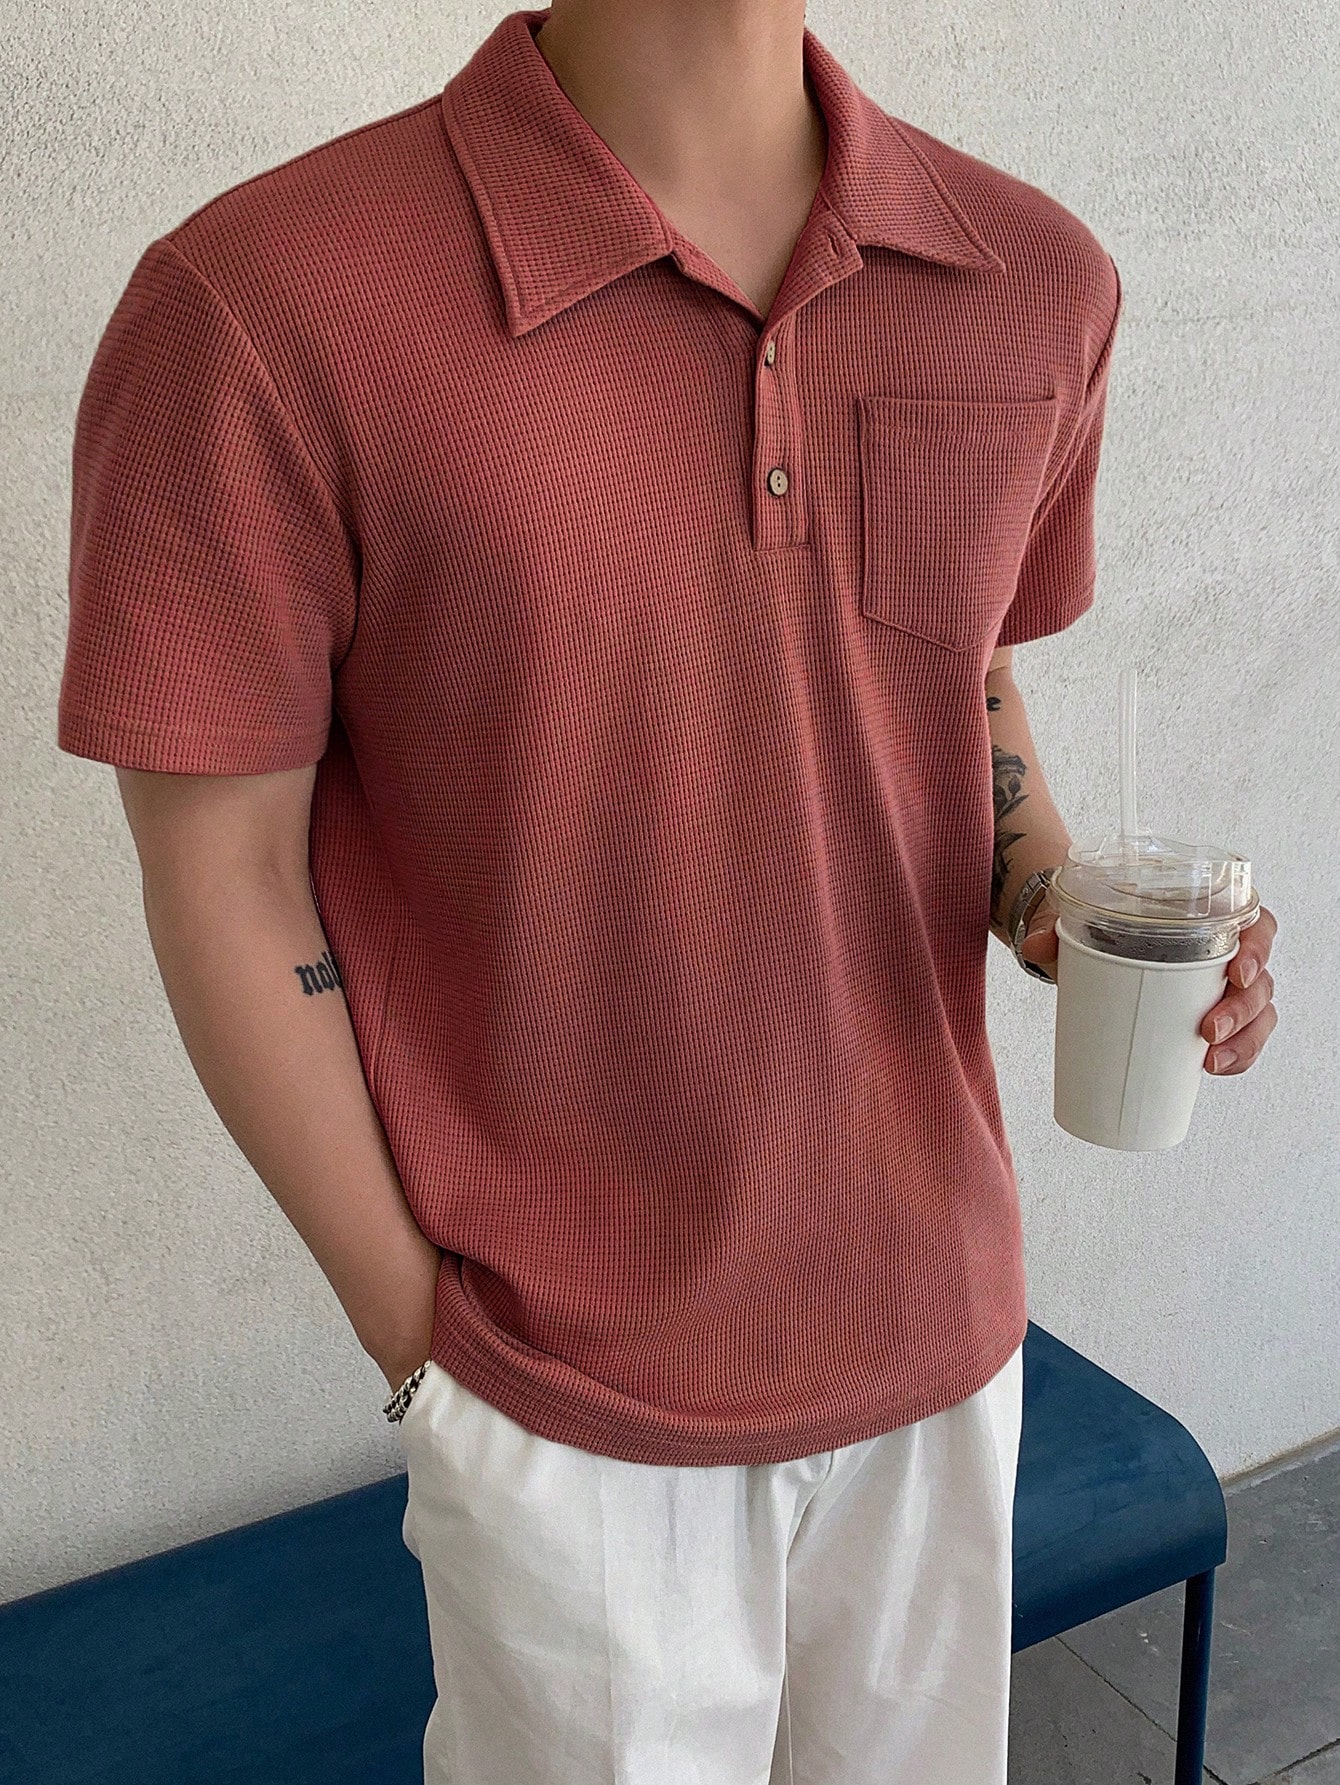 DAZY Мужская однотонная рубашка поло с коротким рукавом на лето, красный рубашка поло с короткими рукавами – мужская smartwool цвет almond heather